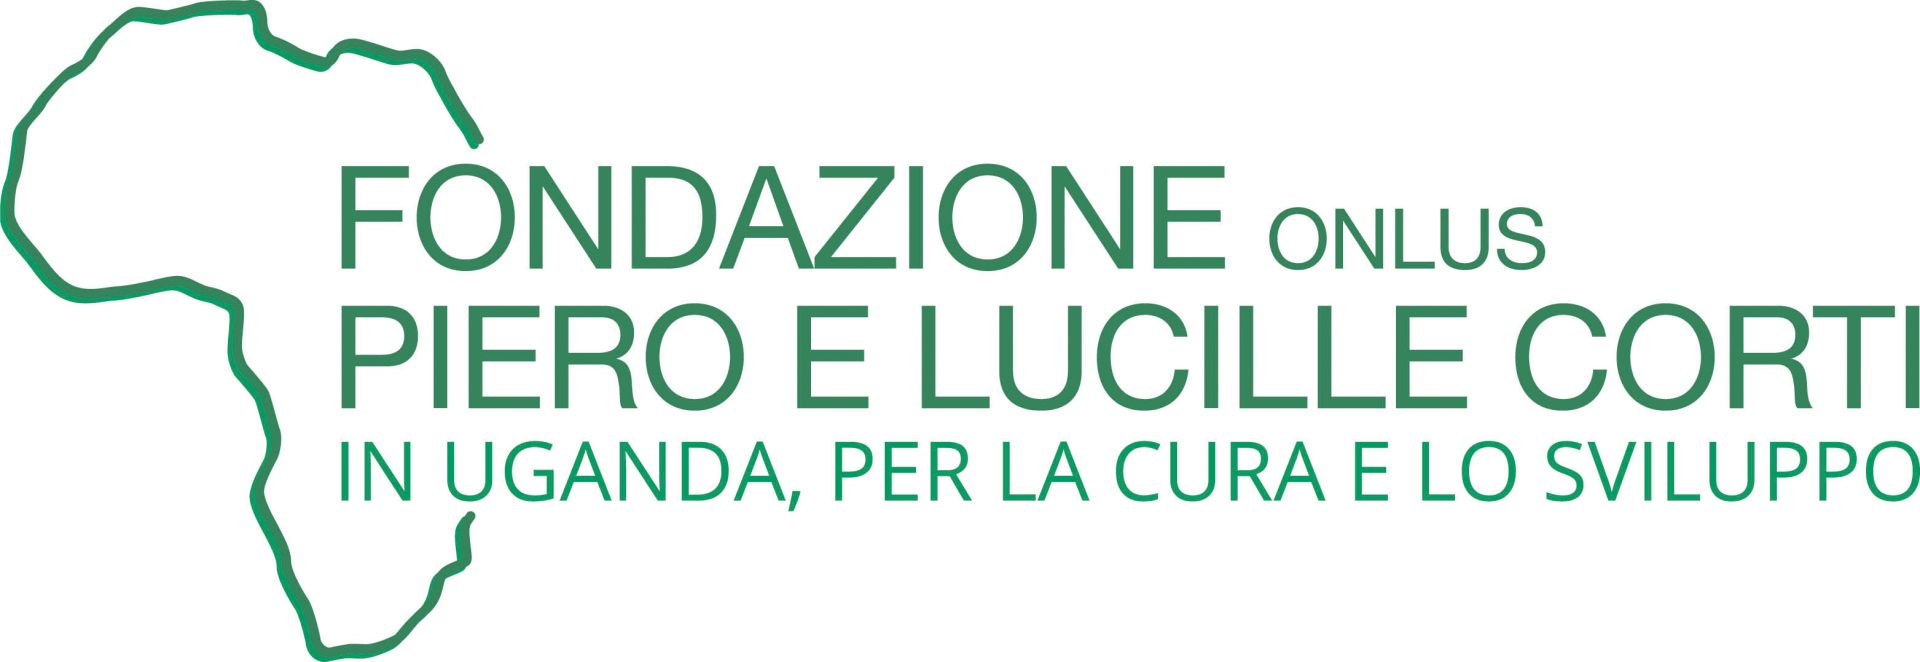 Fondazione Piero e Lucille Corti